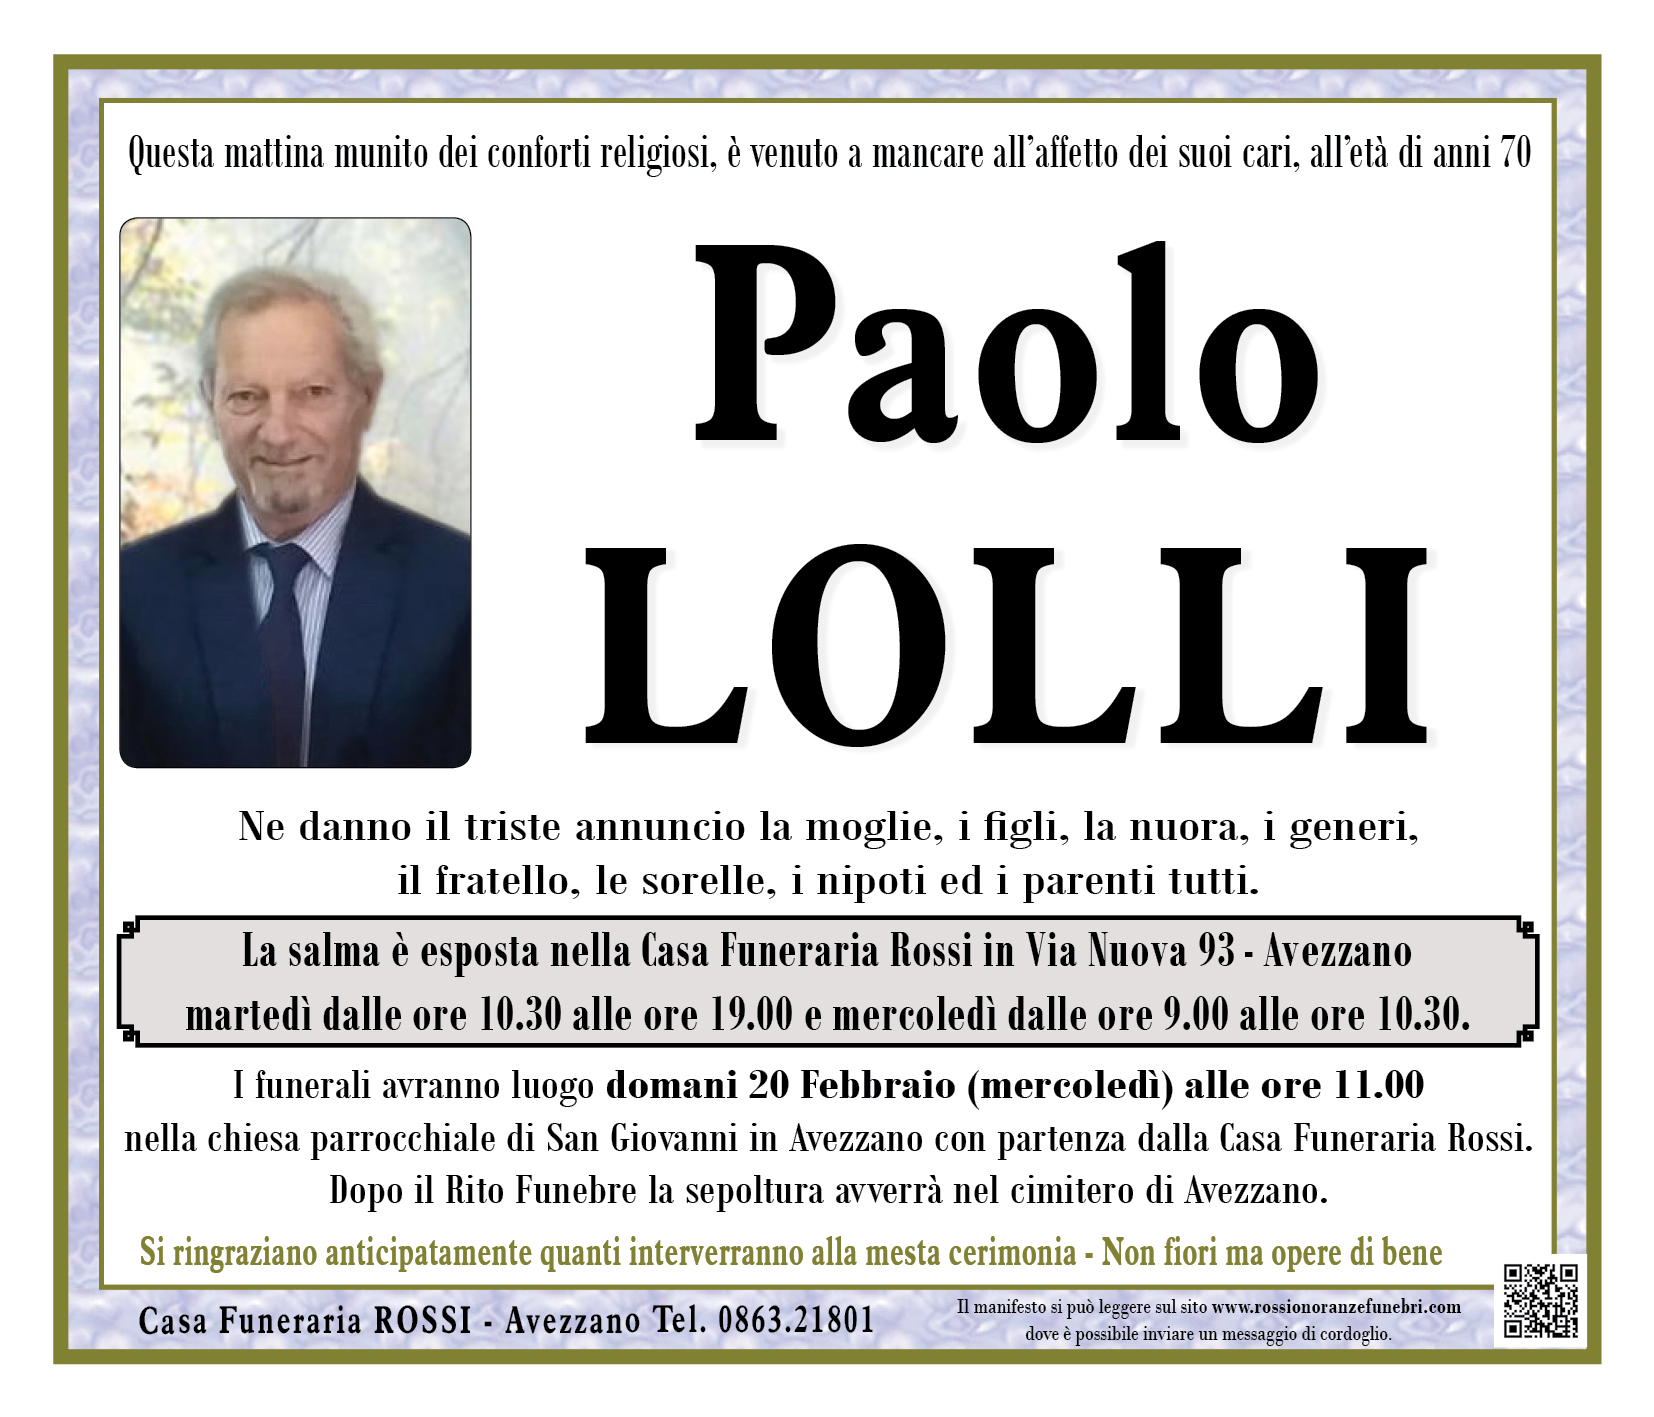 Paolo Lolli